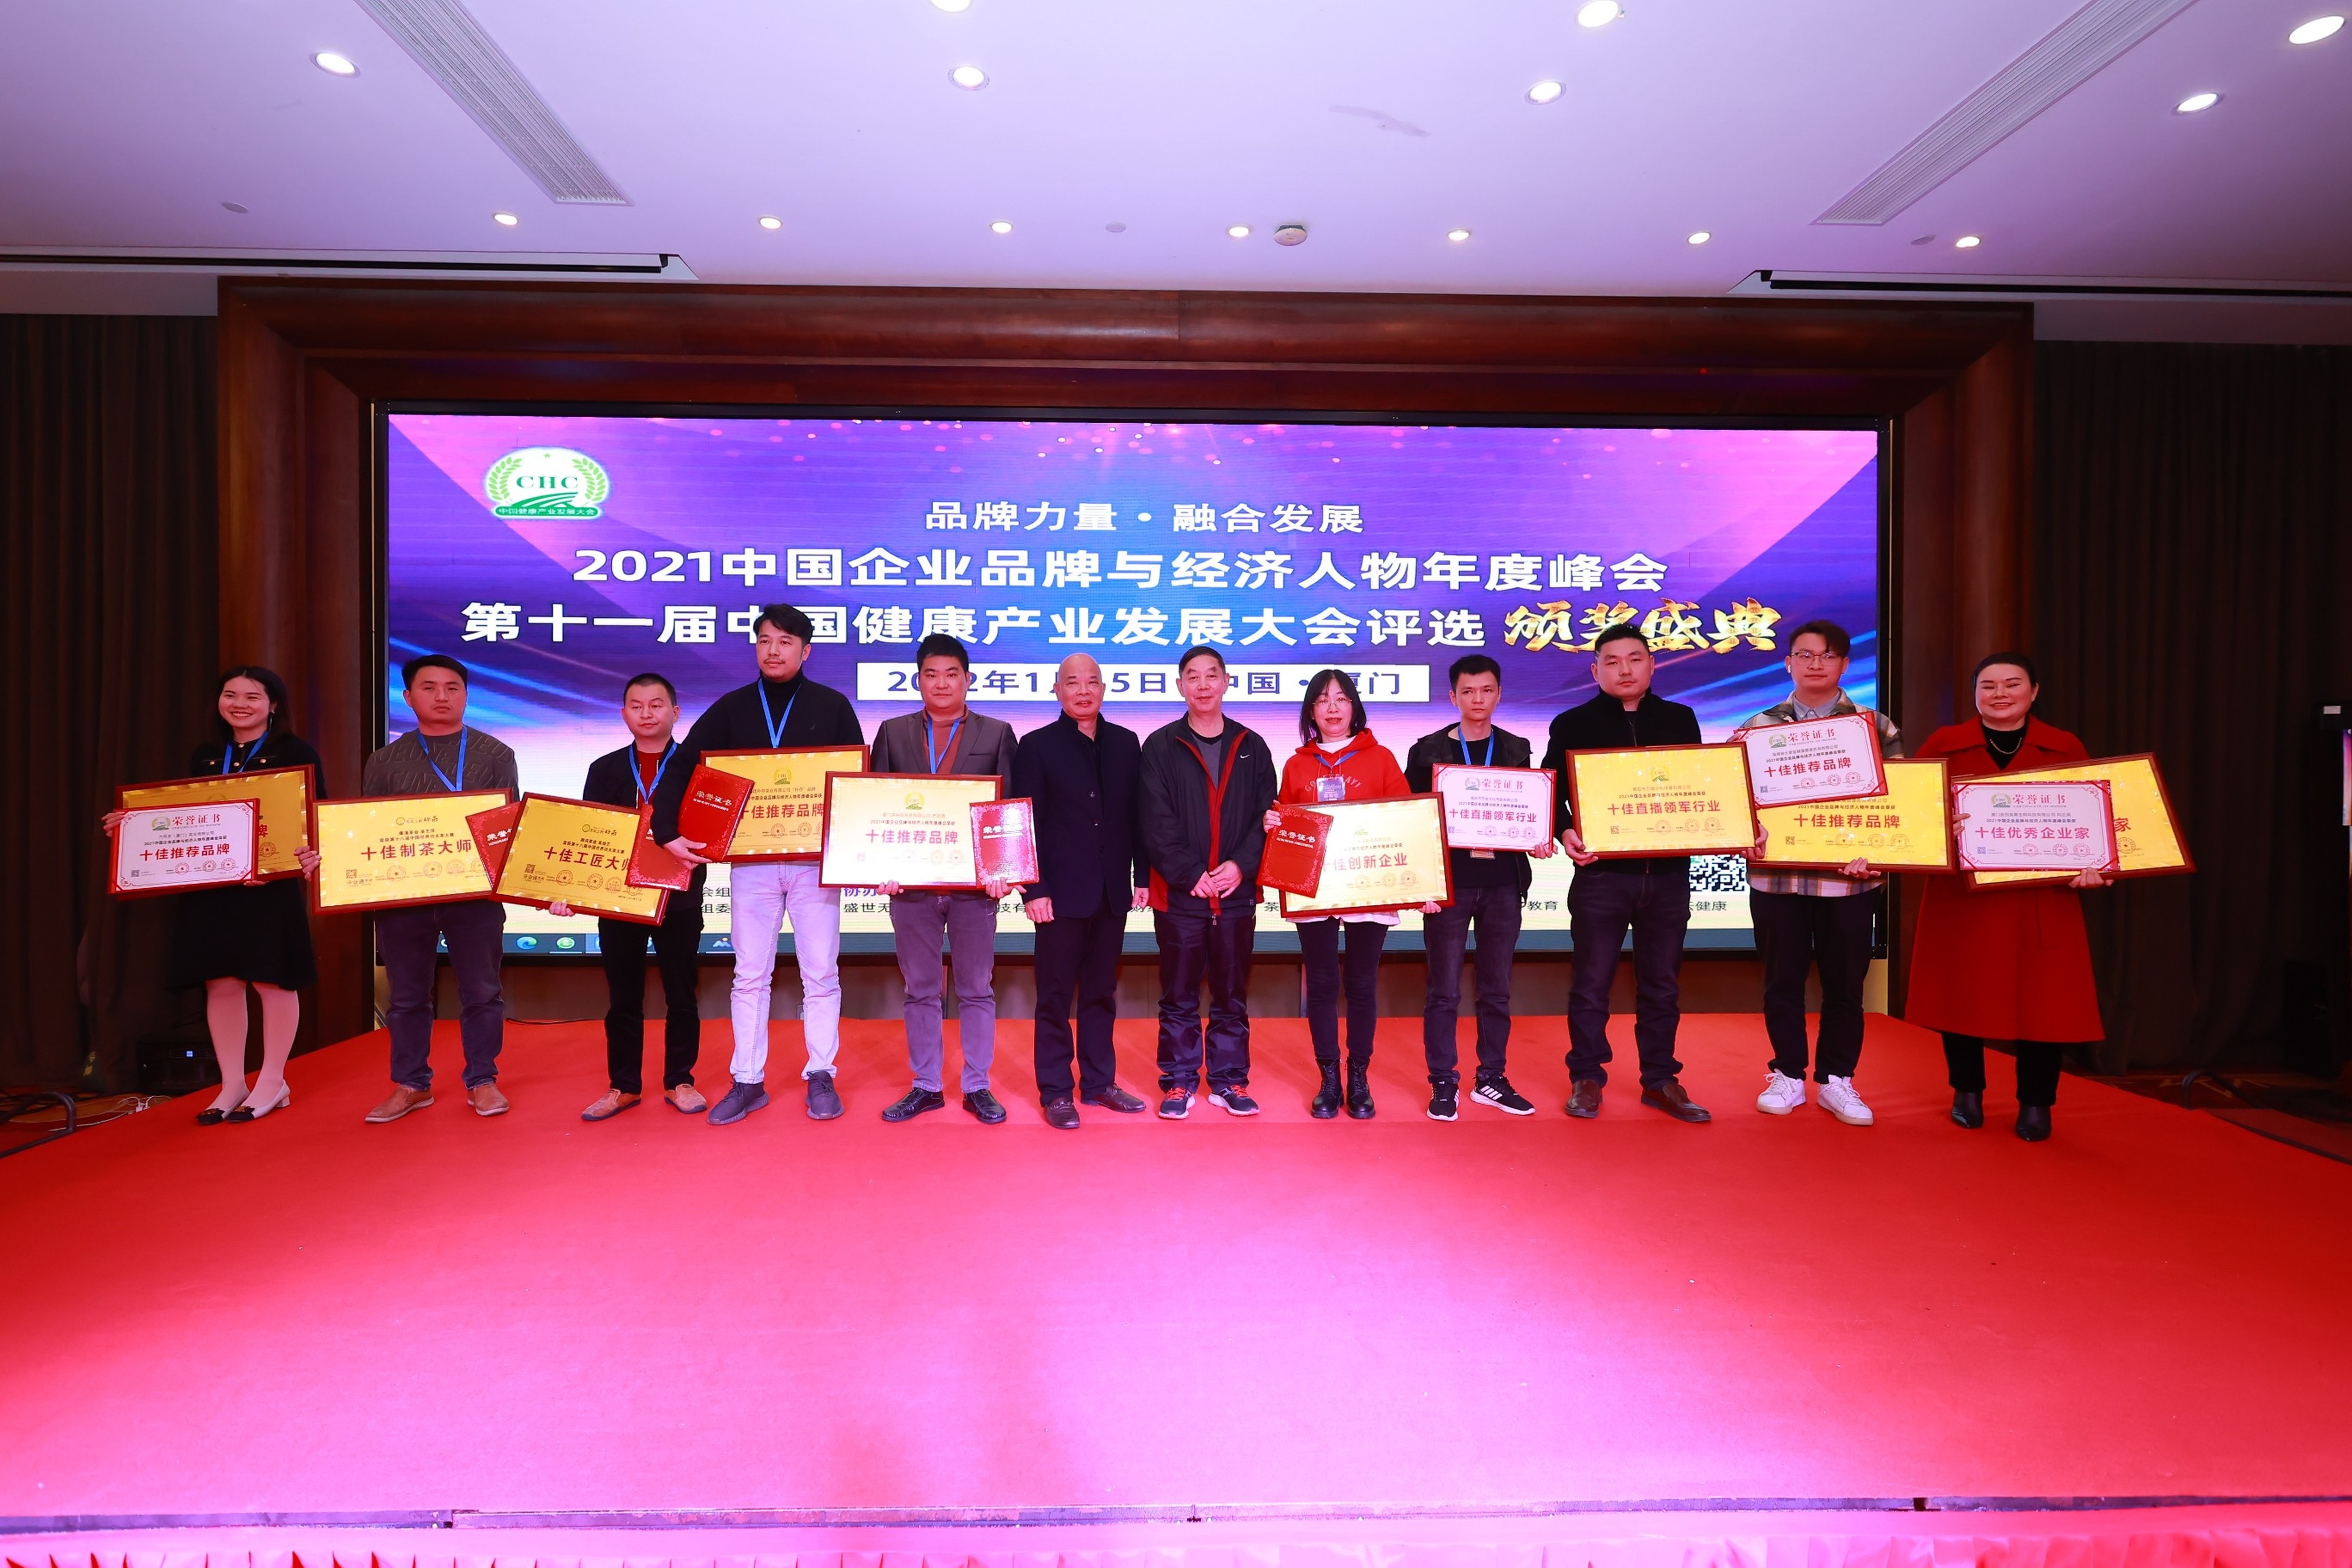 2021中国企业品牌年度峰会暨11届健康产业大会评选颁奖厦门闭幕